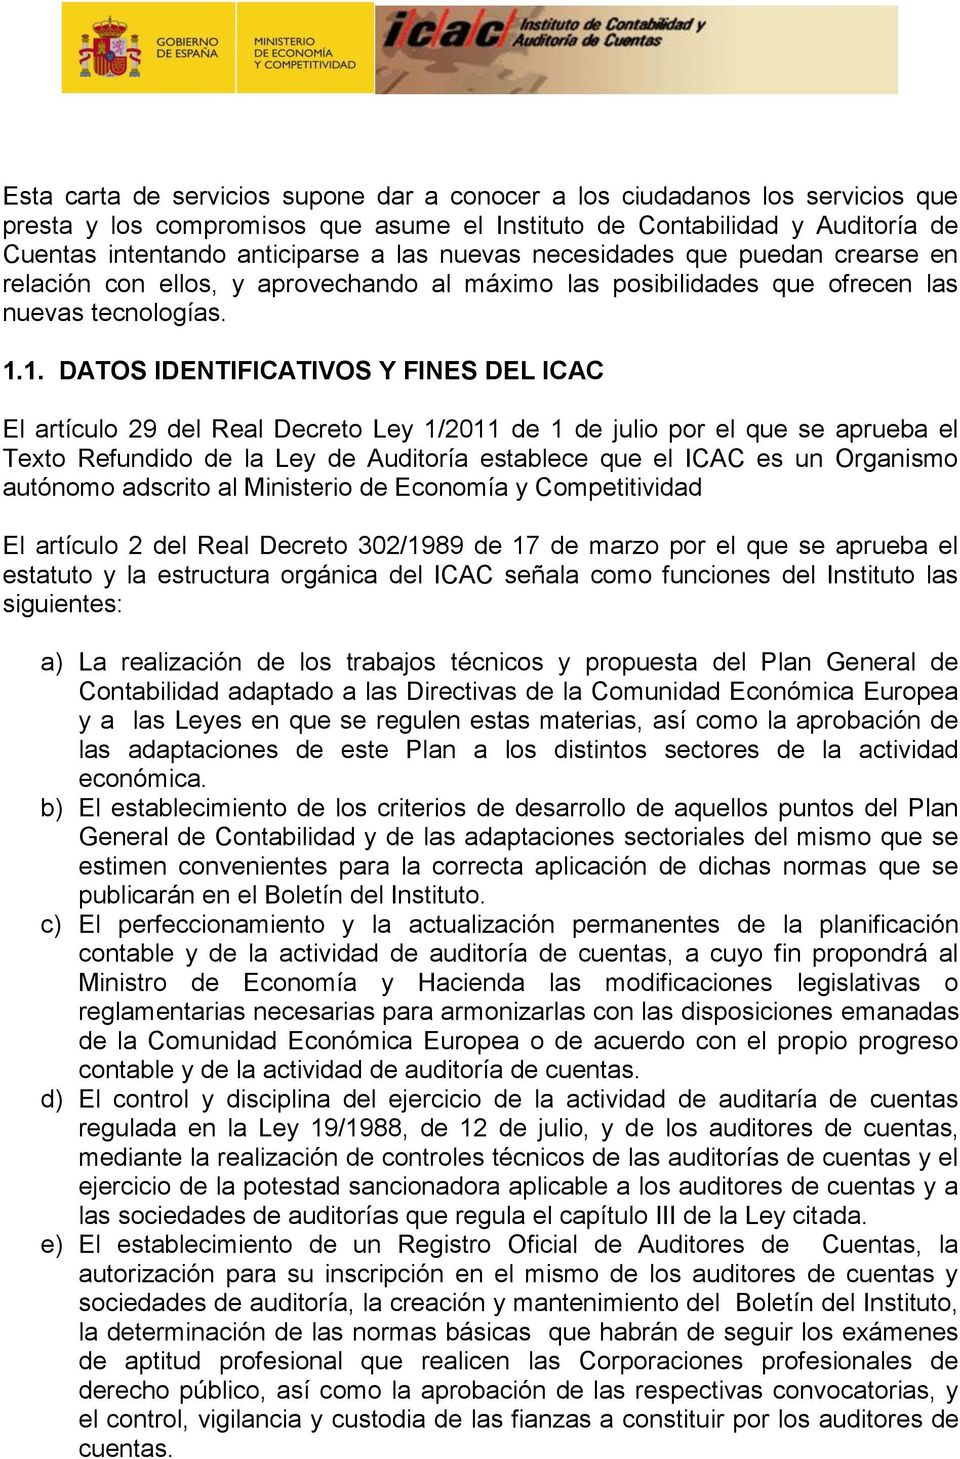 1. DATOS IDENTIFICATIVOS Y FINES DEL ICAC El artículo 29 del Real Decreto Ley 1/2011 de 1 de julio por el que se aprueba el Texto Refundido de la Ley de Auditoría establece que el ICAC es un